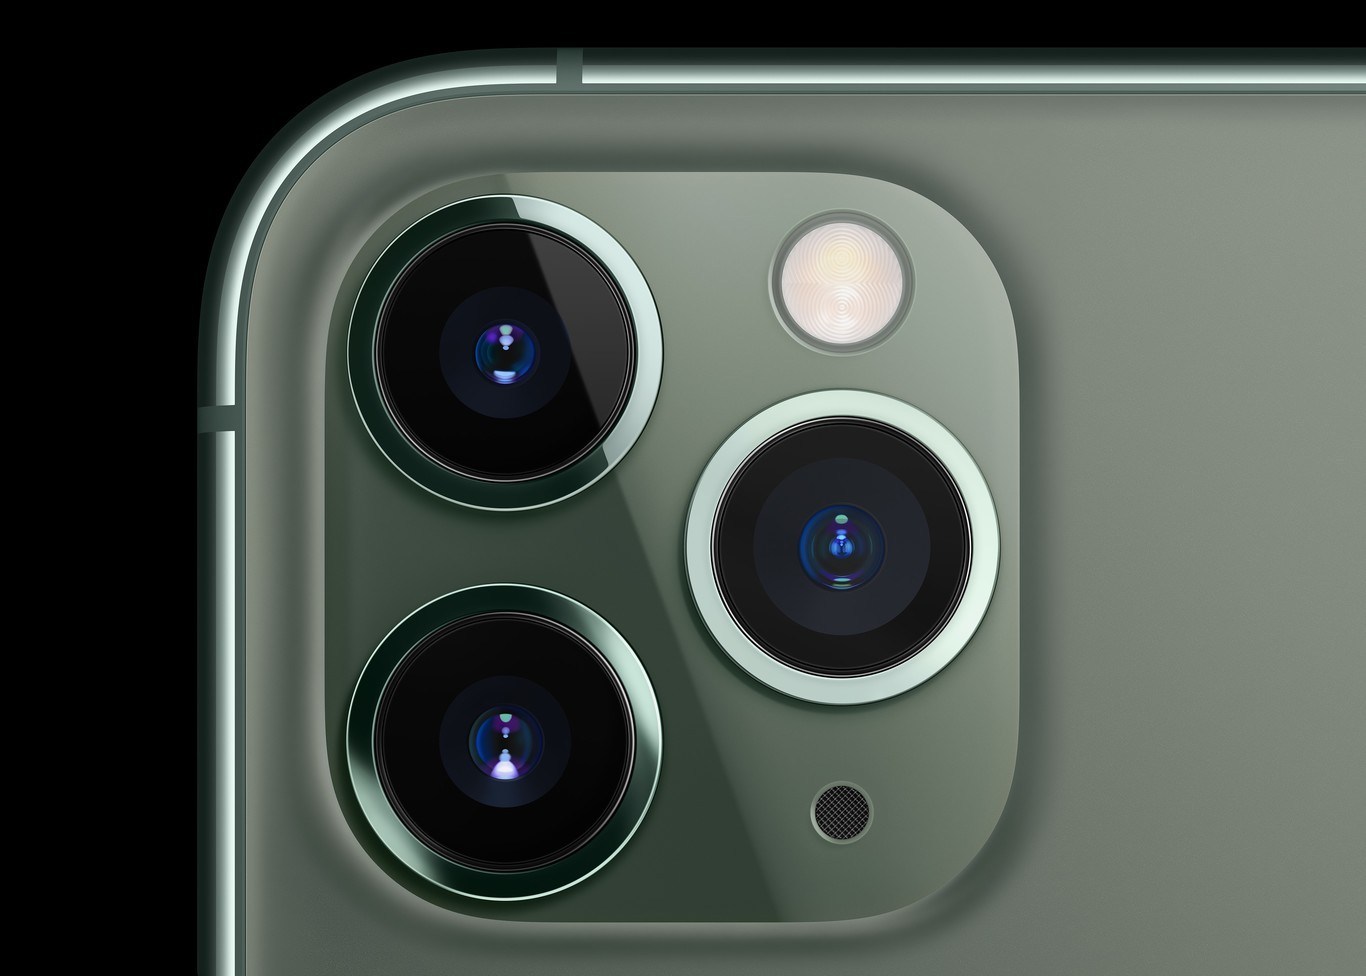 Mode Malam pada iPhone 11 Pro meningkatkan level fotografi